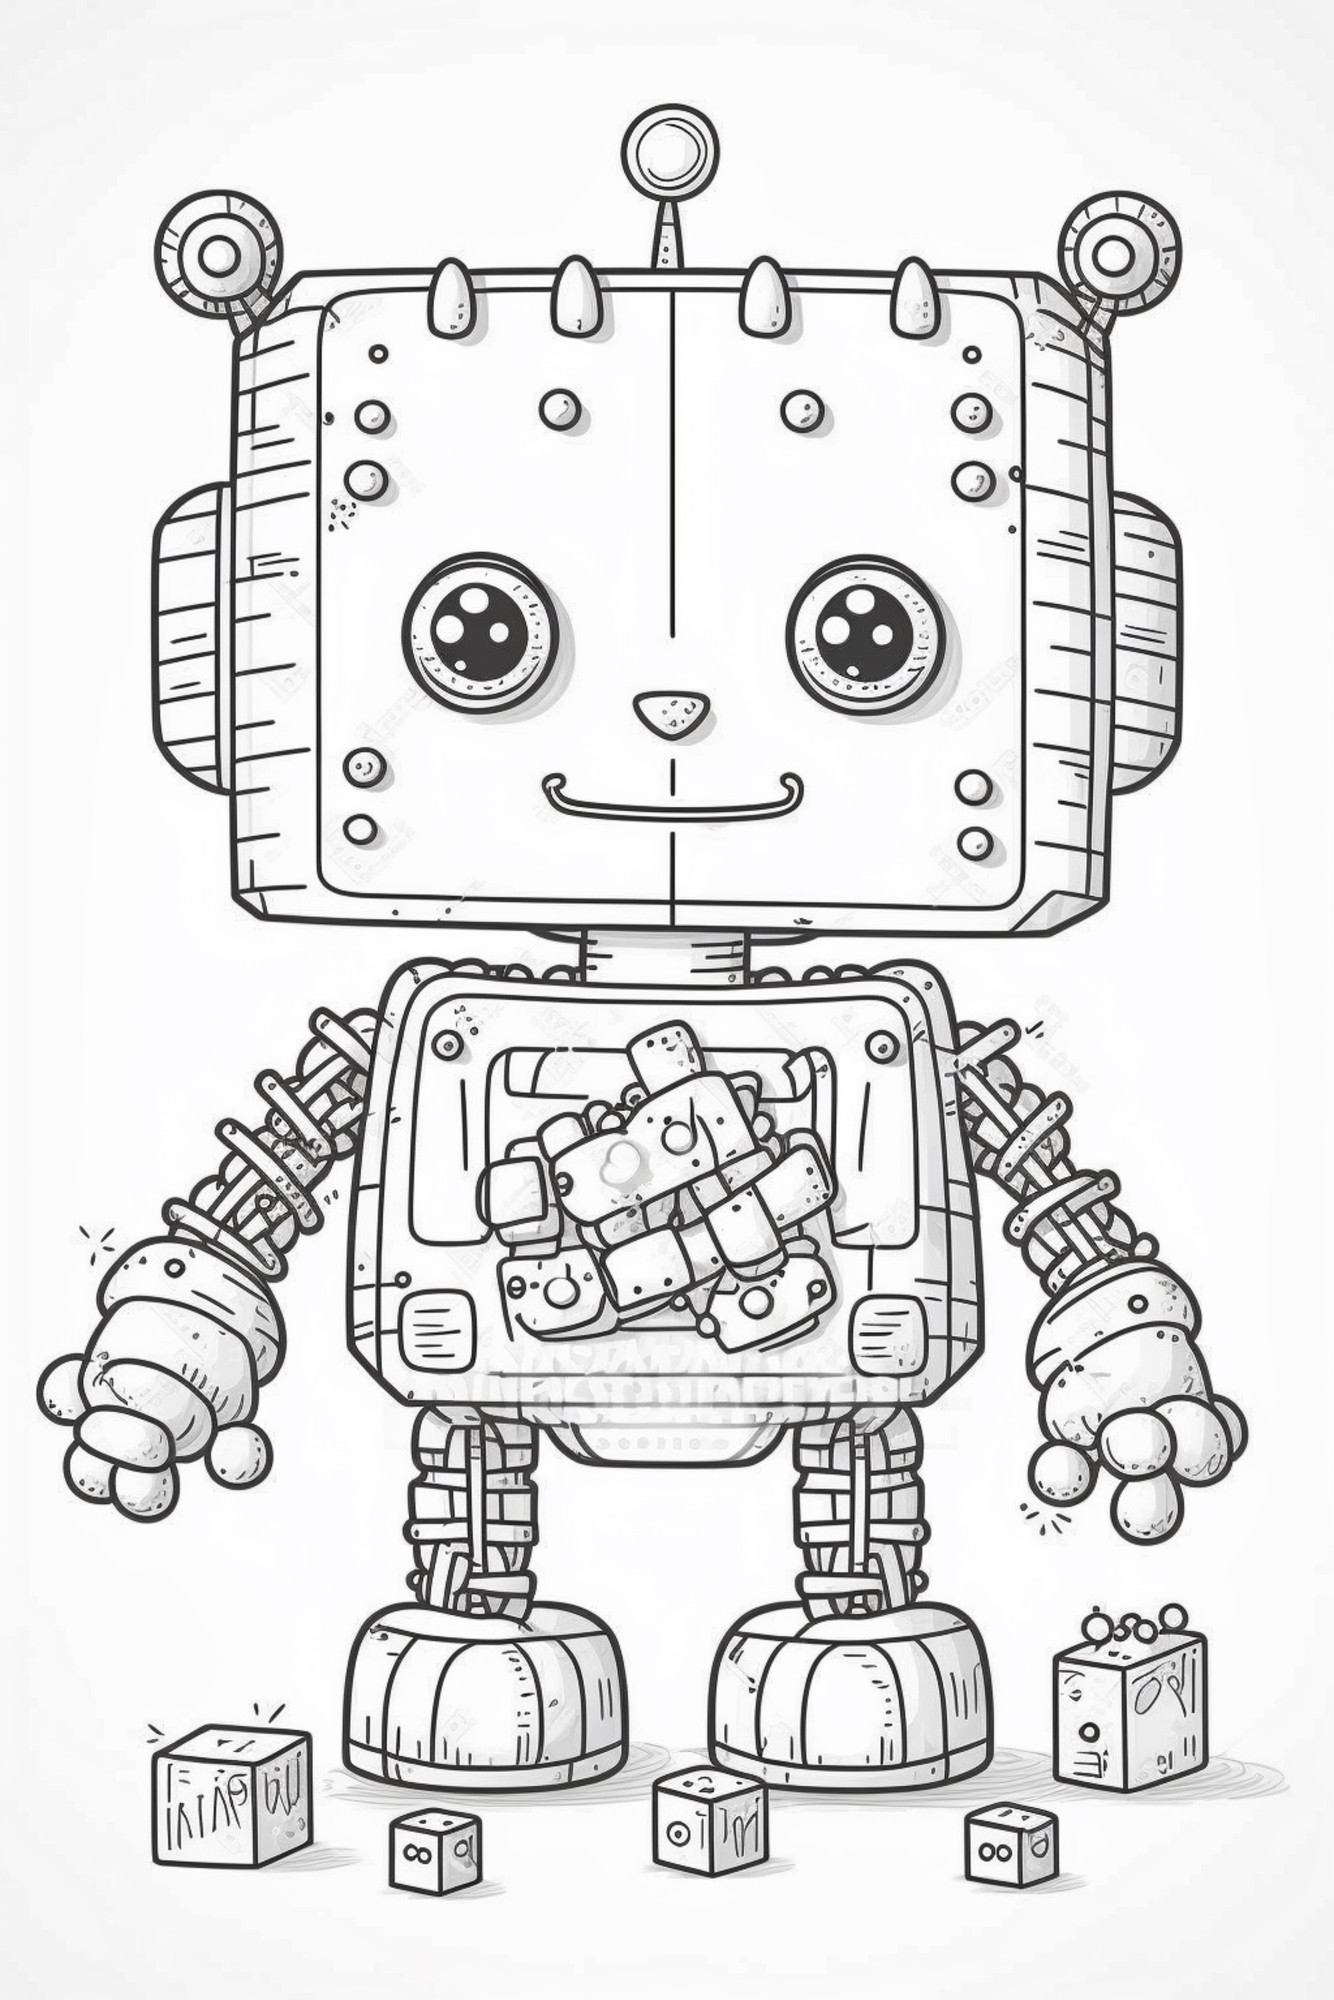 Раскраска для детей: маленький робот с игрушкой в руке